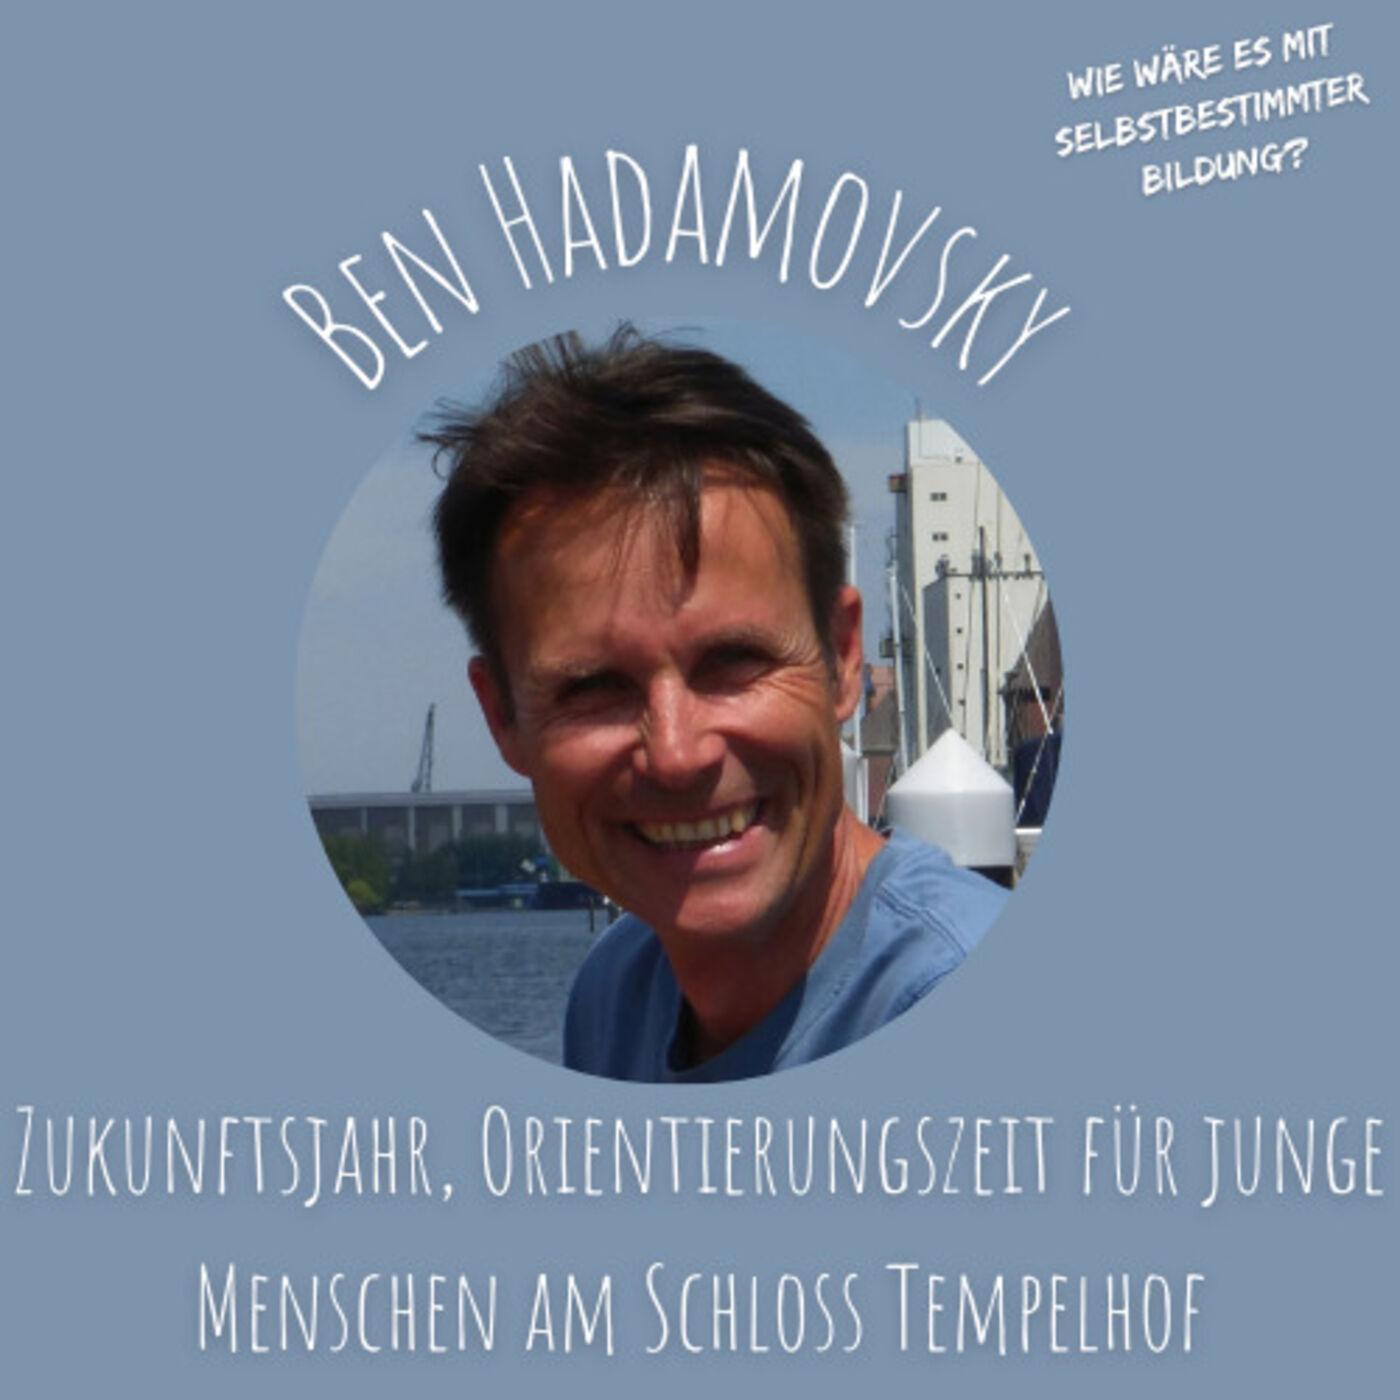 Zukunftsjahr, Orientierungszeit für junge Menschen am Schloss Tempelhof - Max Sauber im Gespräch mit Ben Hadamovsky